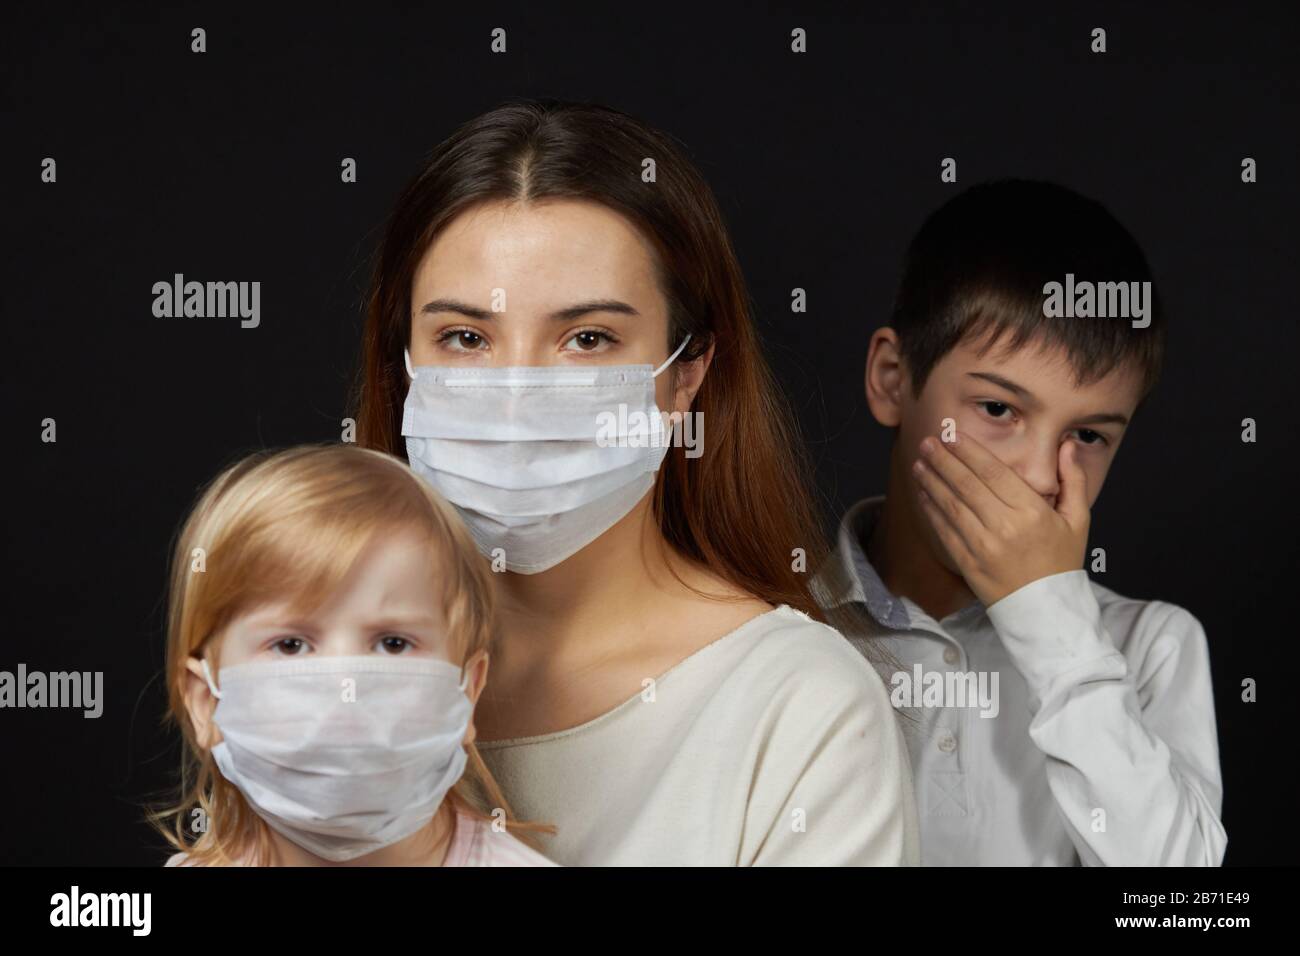 estornudos enmascarados de niña y niño, el concepto de protección contra la propagación de la máscara médica del virus. Foto de stock